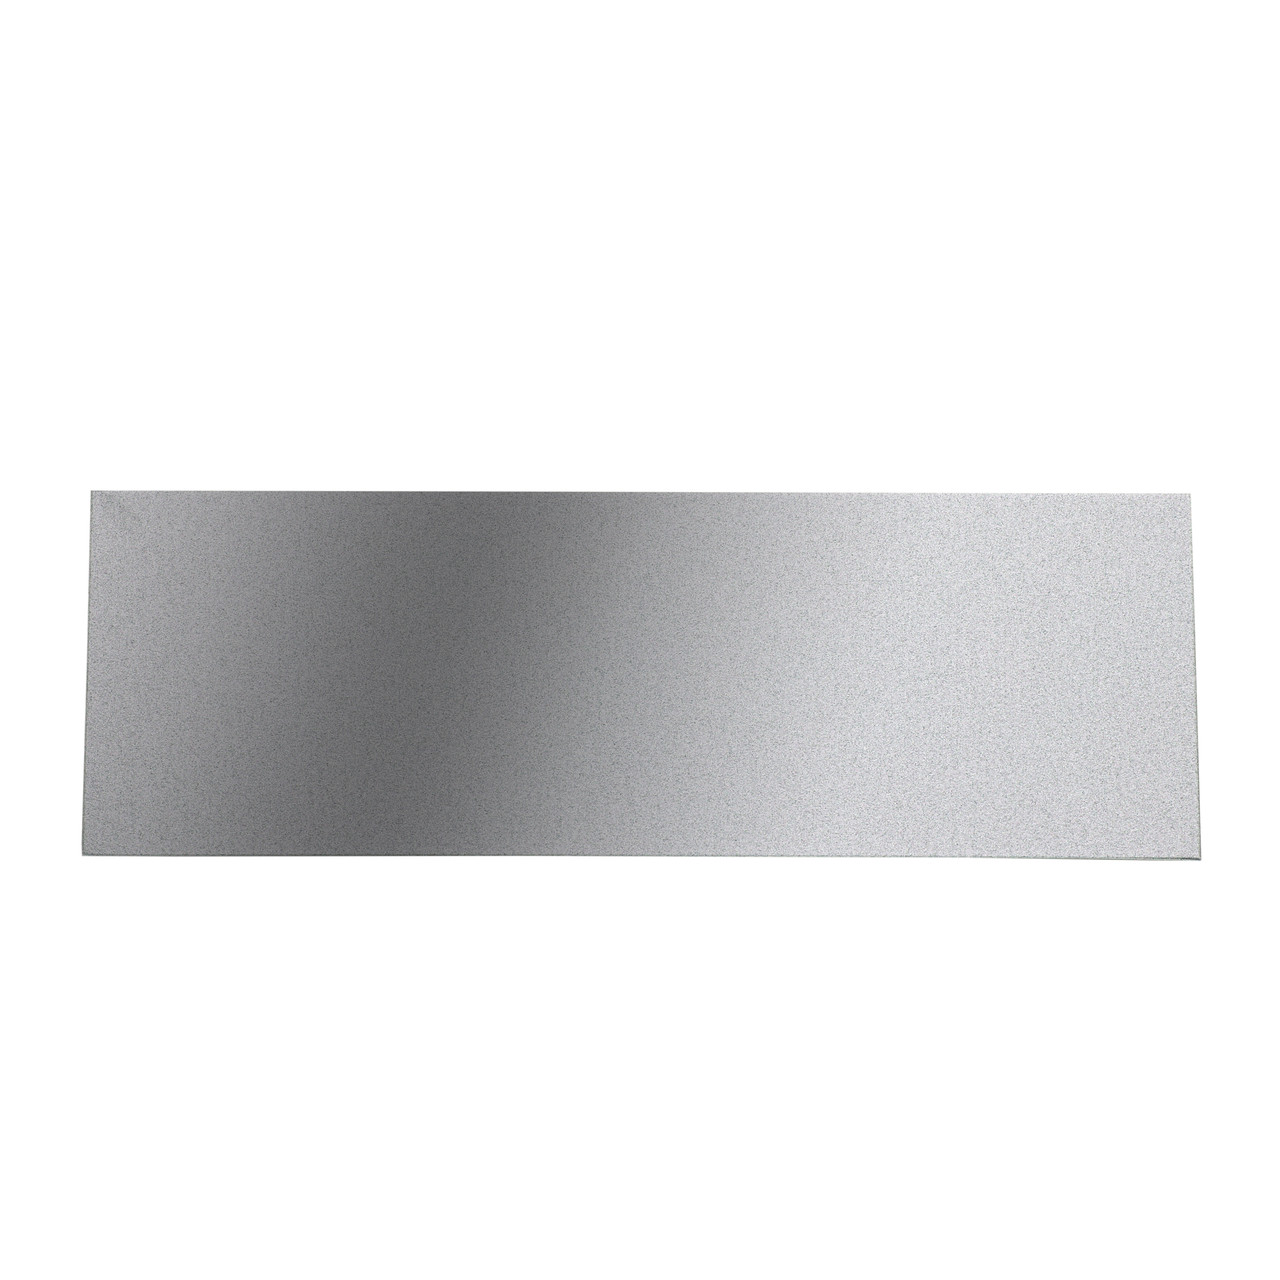 5 x 7 Blank Metal Laser Plate